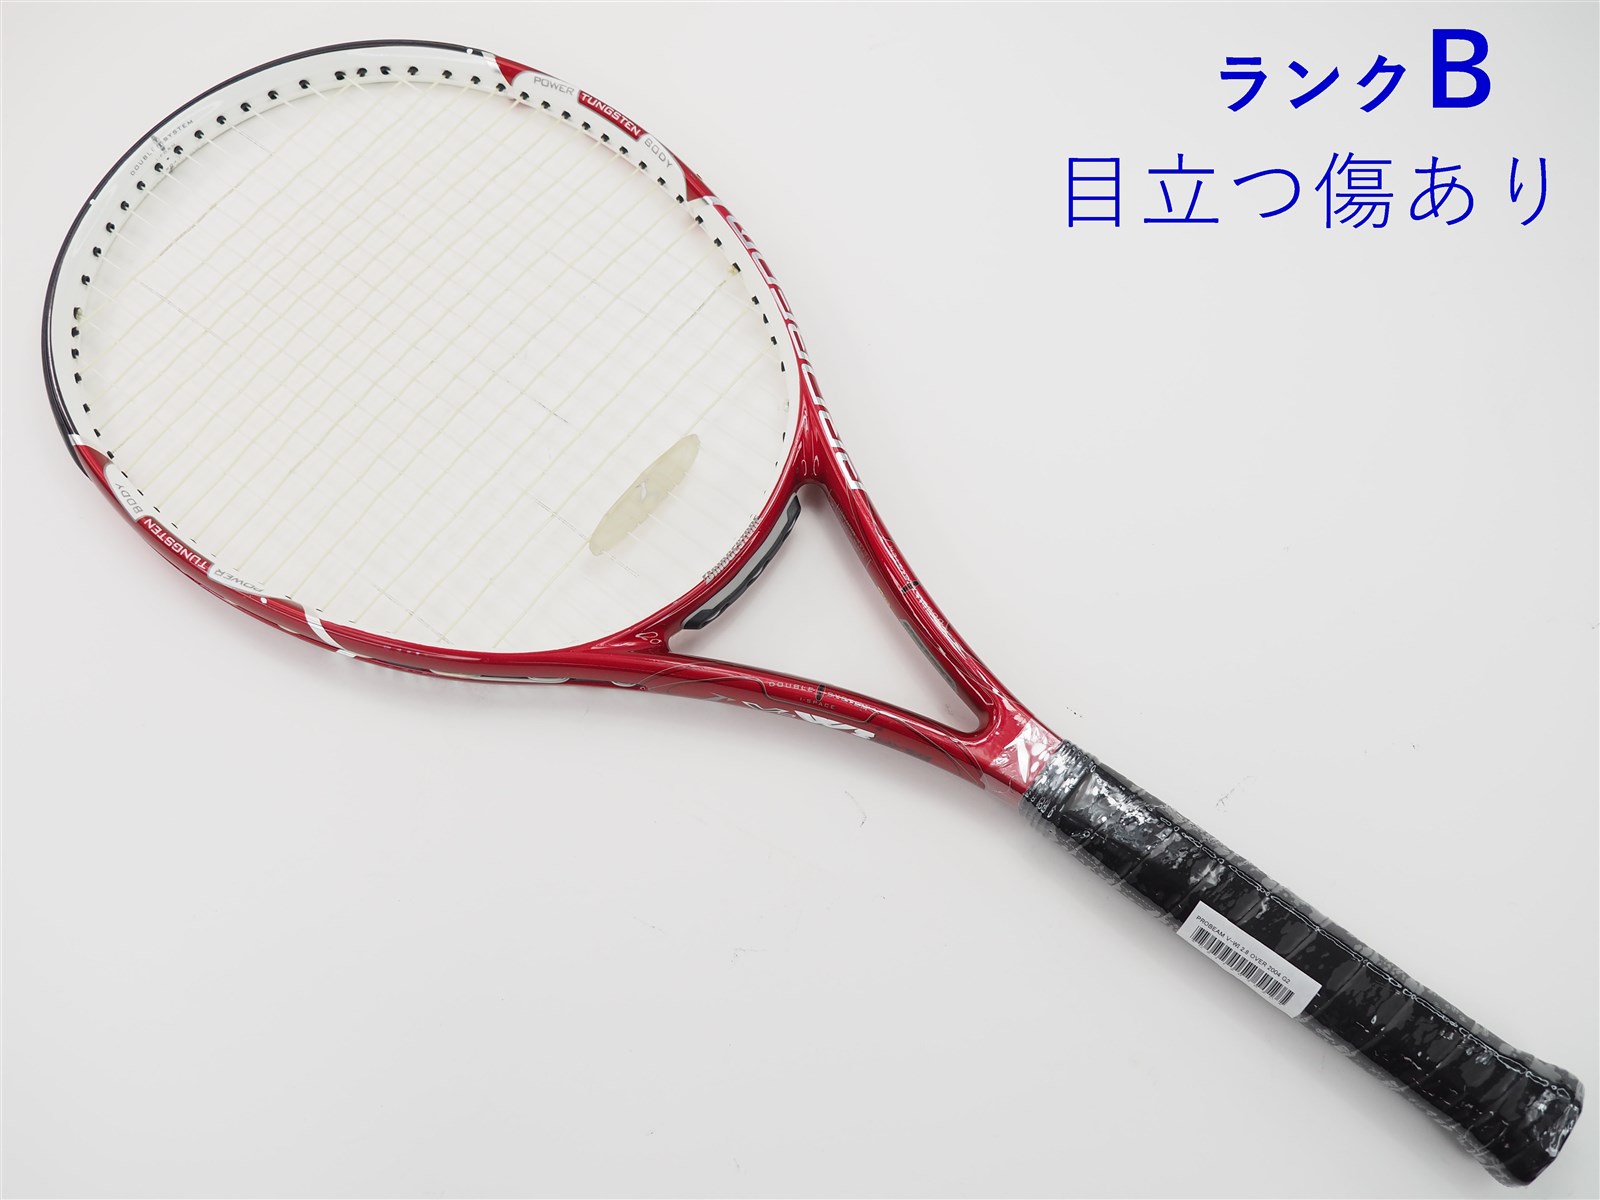 ブリヂストン テニスラケット プロビーム X02mid 【お気に入り】 - ラケット(硬式用)